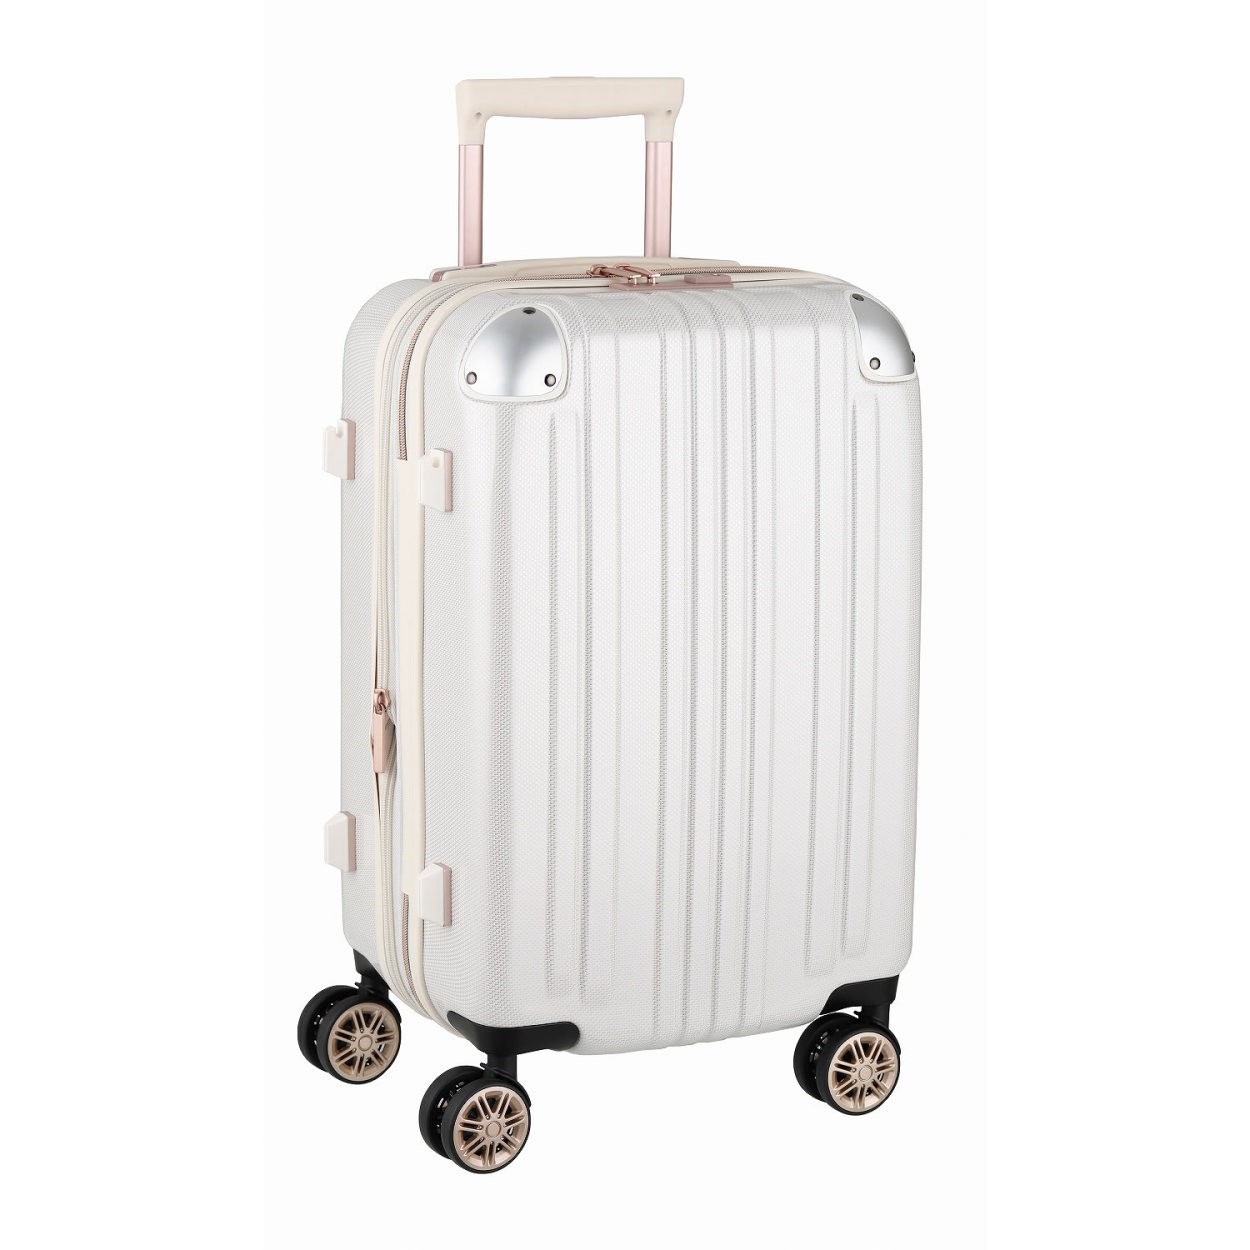 スーツケース キャリーバッグ トランクケース レディースバッグ 機内持ち込み 小型 超軽量 おしゃれ かわいい 拡張 キャリーケース キャリーバッグ 5122 48 5122 48 スーツケースのマリエナマキ 通販 Yahoo ショッピング